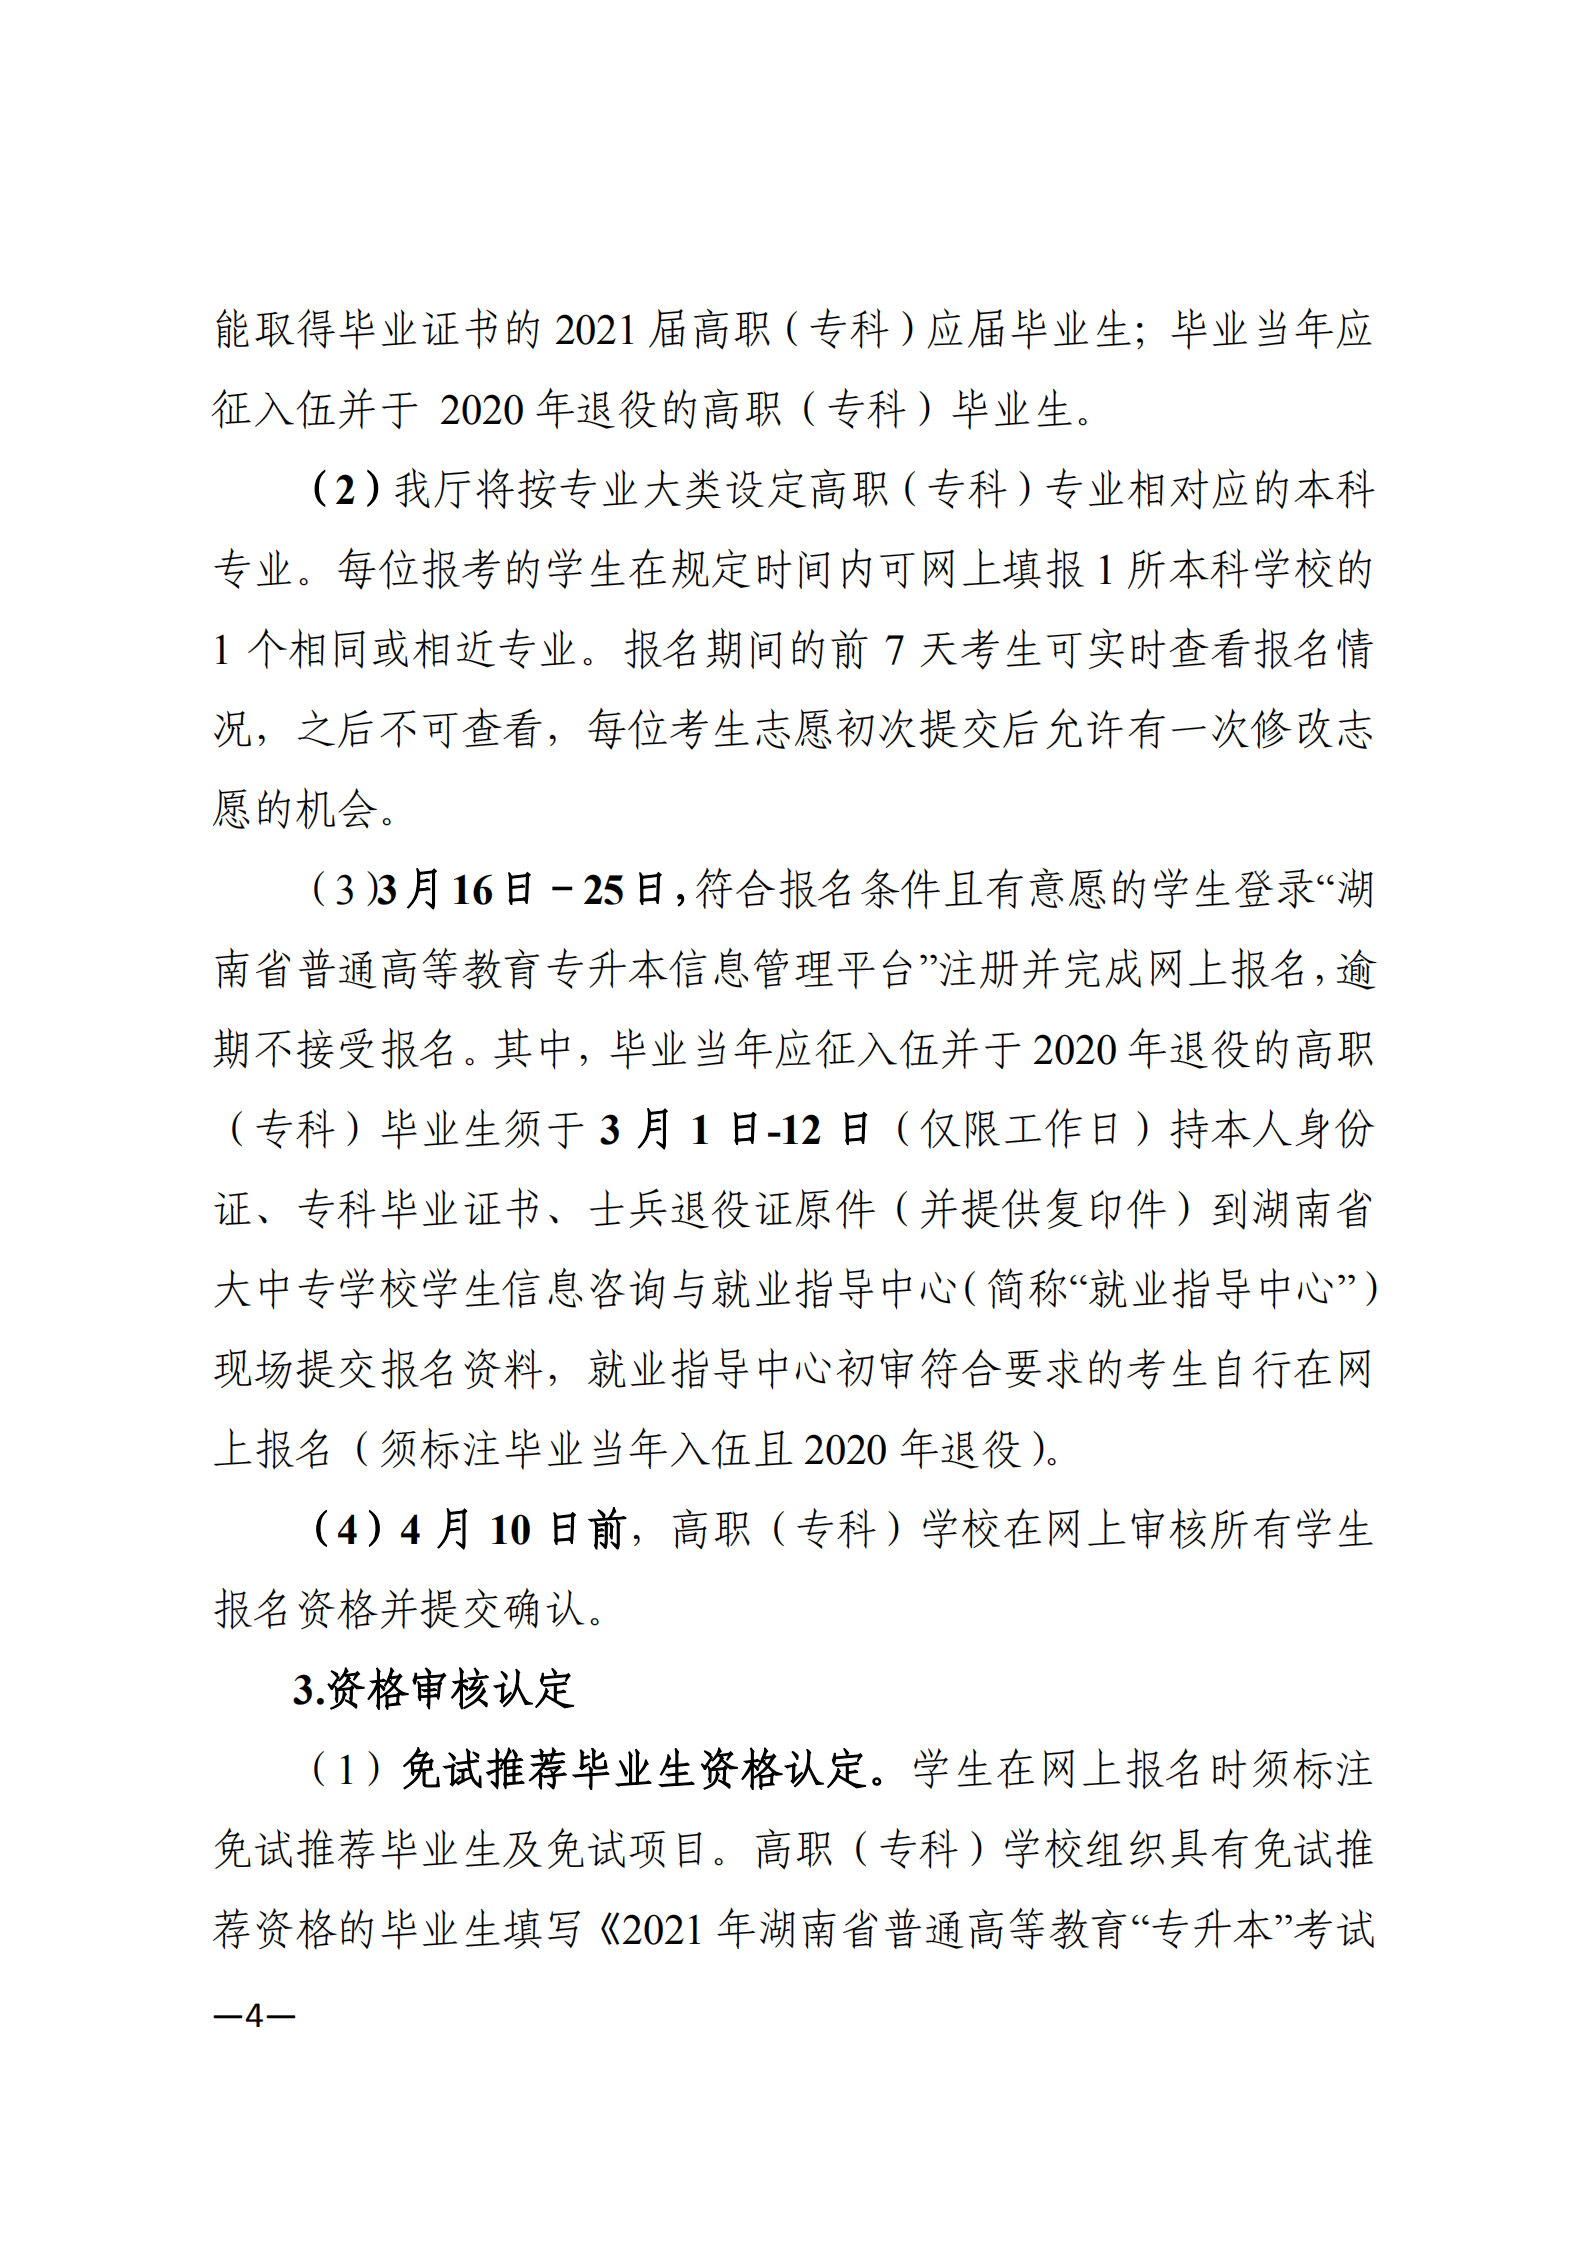 3_湘教发〔2021〕2号 关于印发《2021年湖南省普通高等教育“专升本”考试招生工作实施方案》的通知_03.png